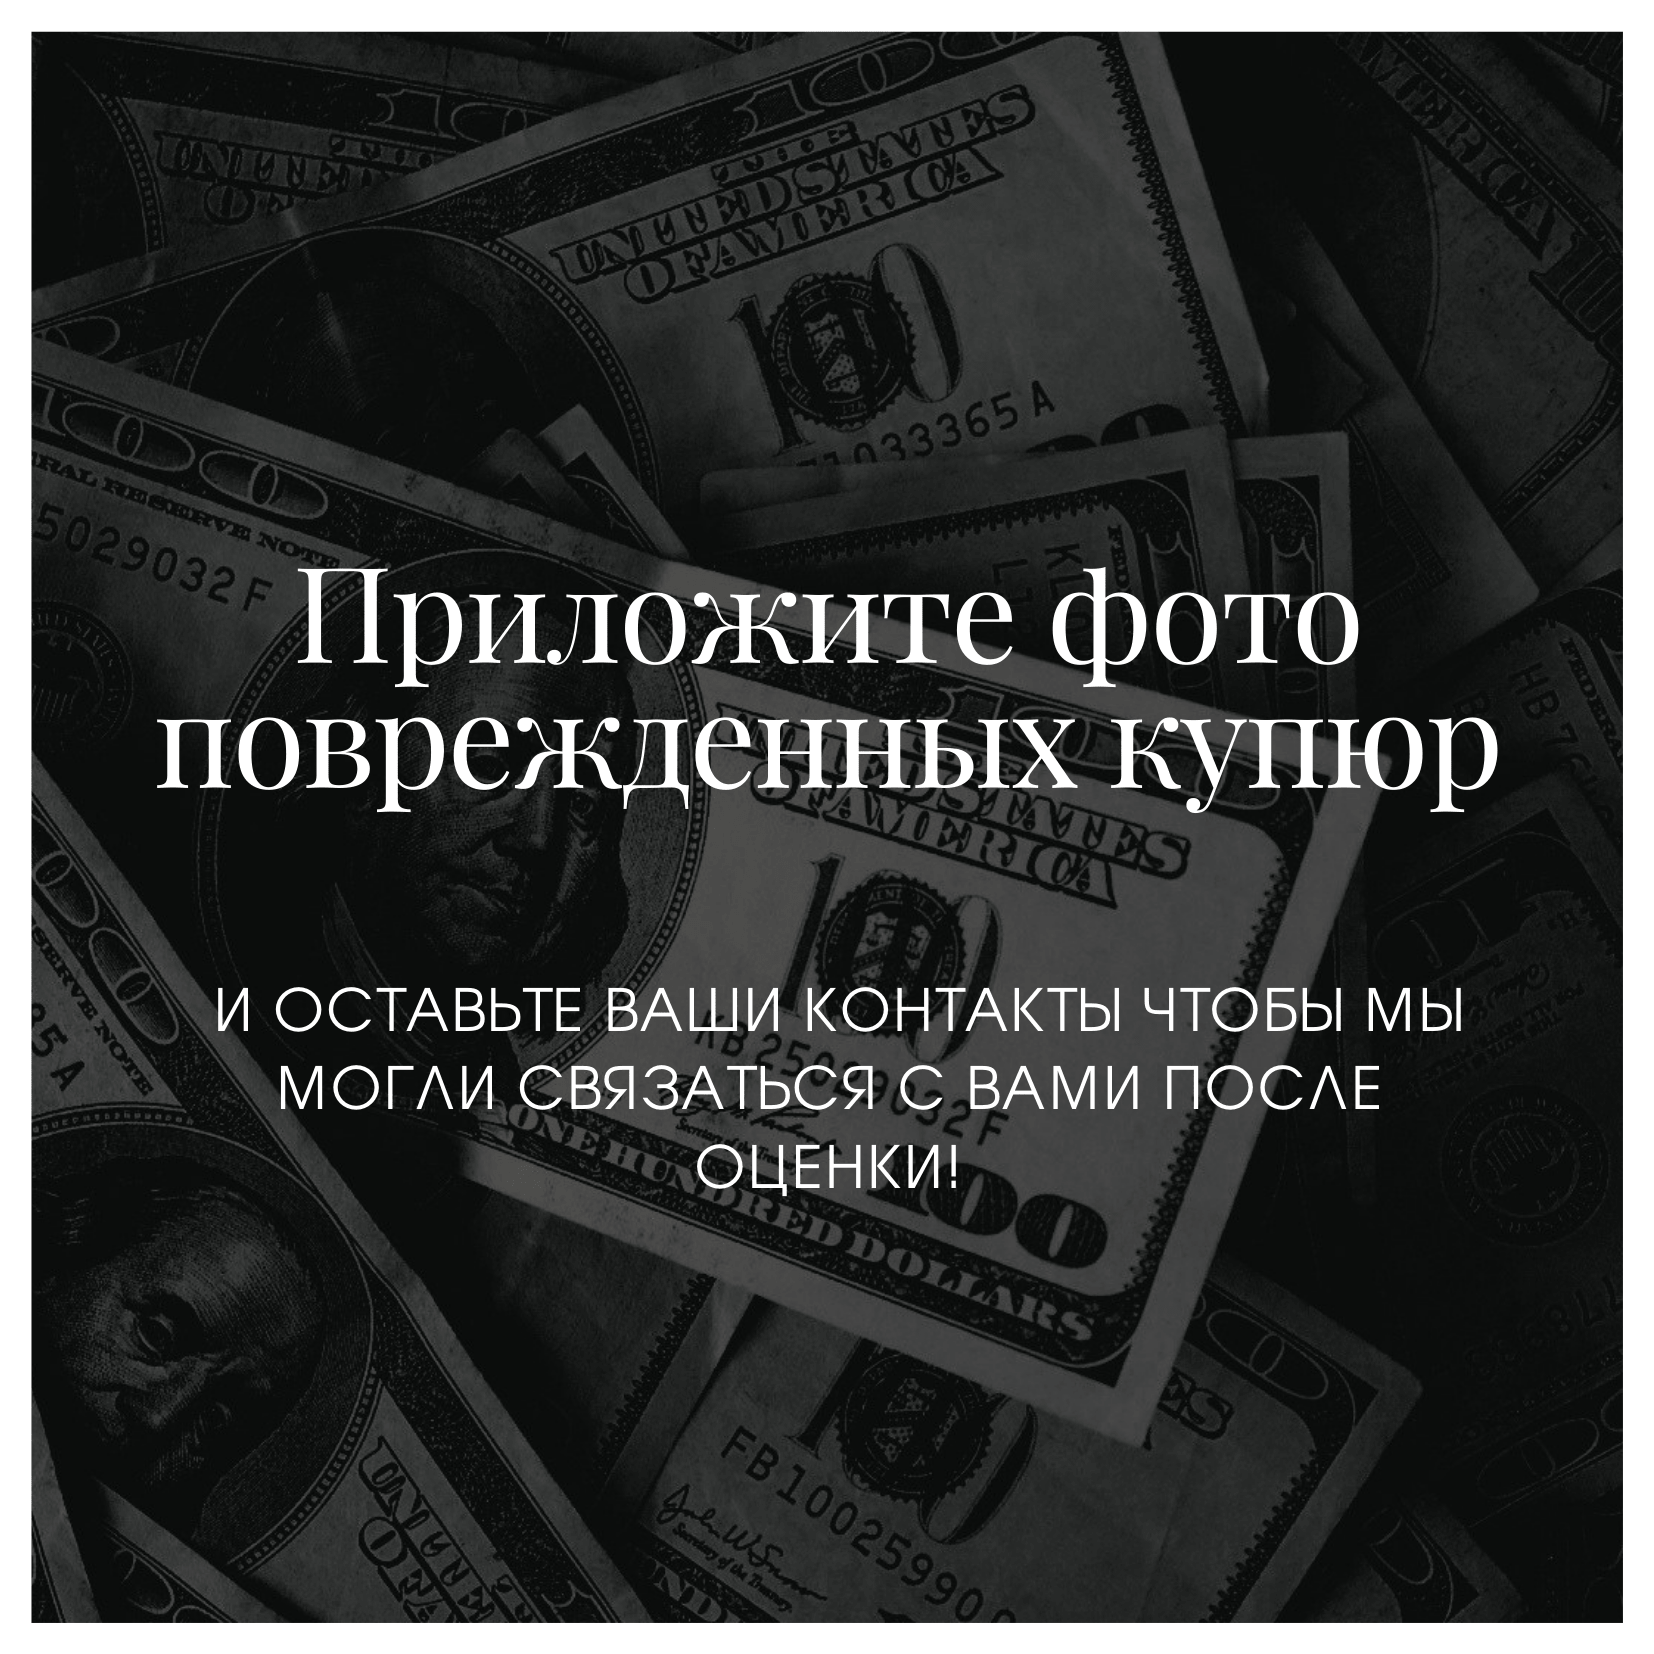 обмен валюты на фунт в москве